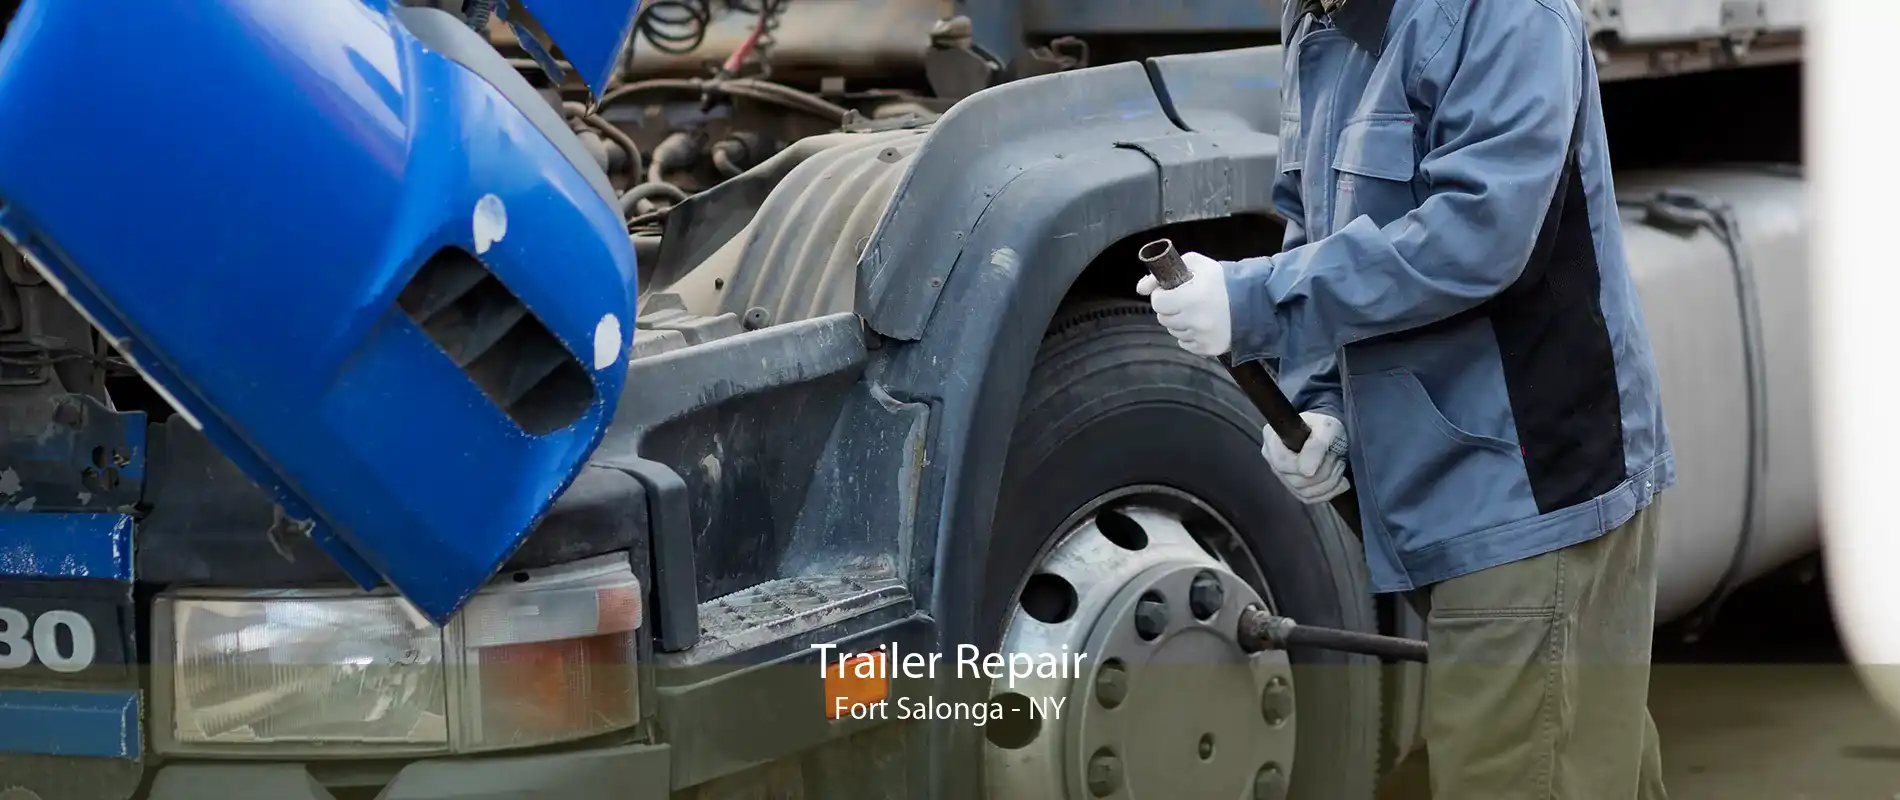 Trailer Repair Fort Salonga - NY